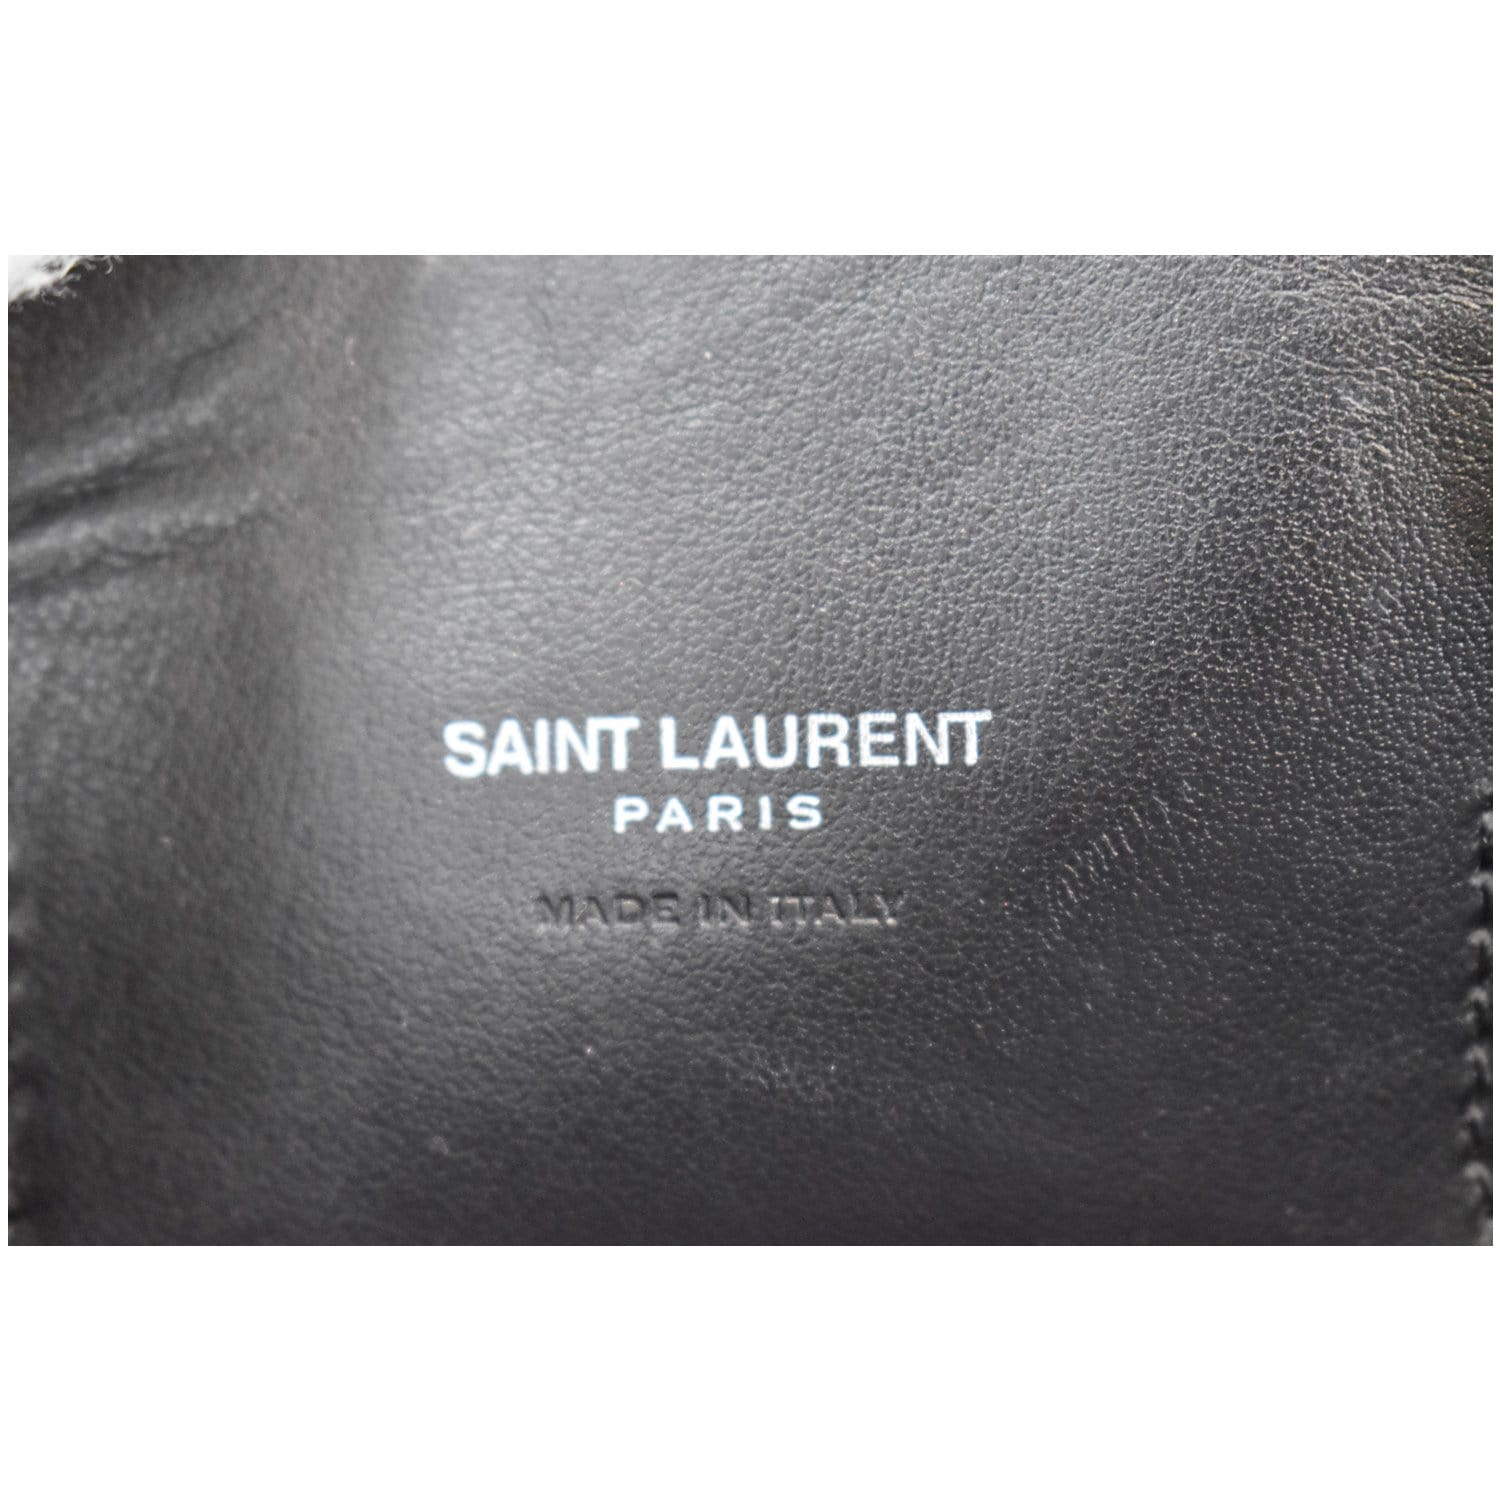 YVES SAINT LAURENT Baby Sac de Jour Grained Leather Tote Bag Black